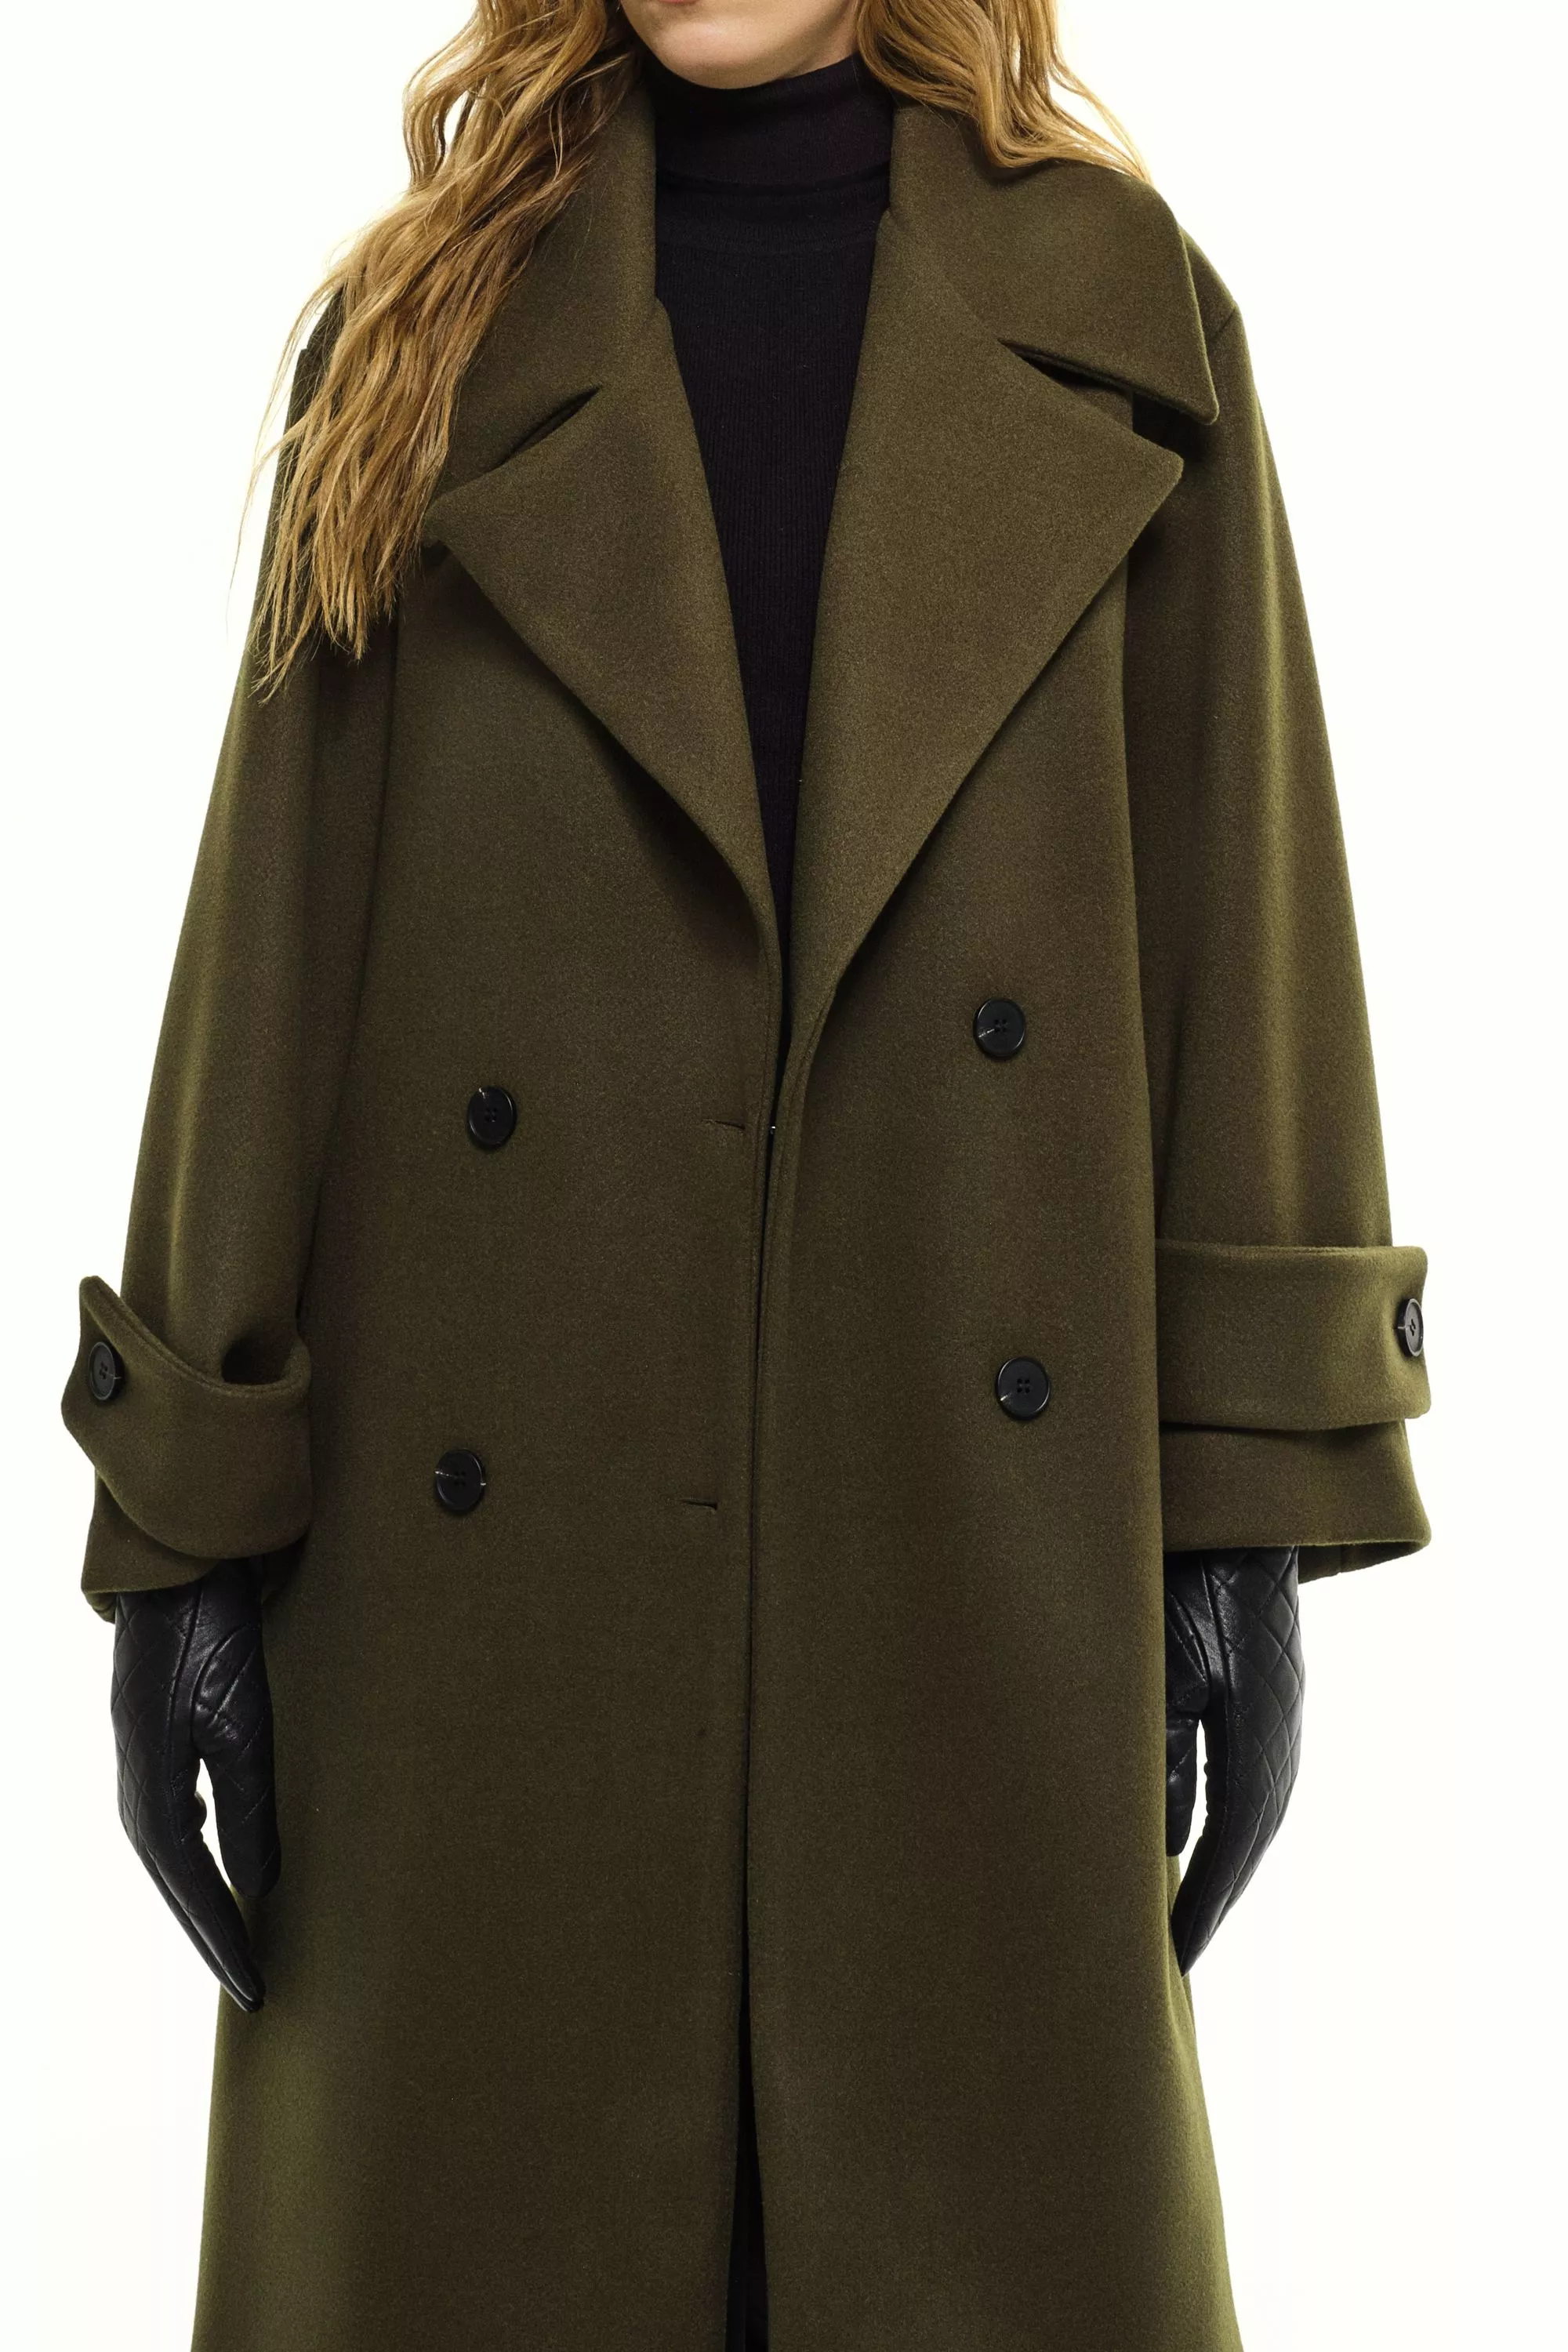 Damen Zweireihiger Mantel in Oliv von Ricano, Detailansicht am Model